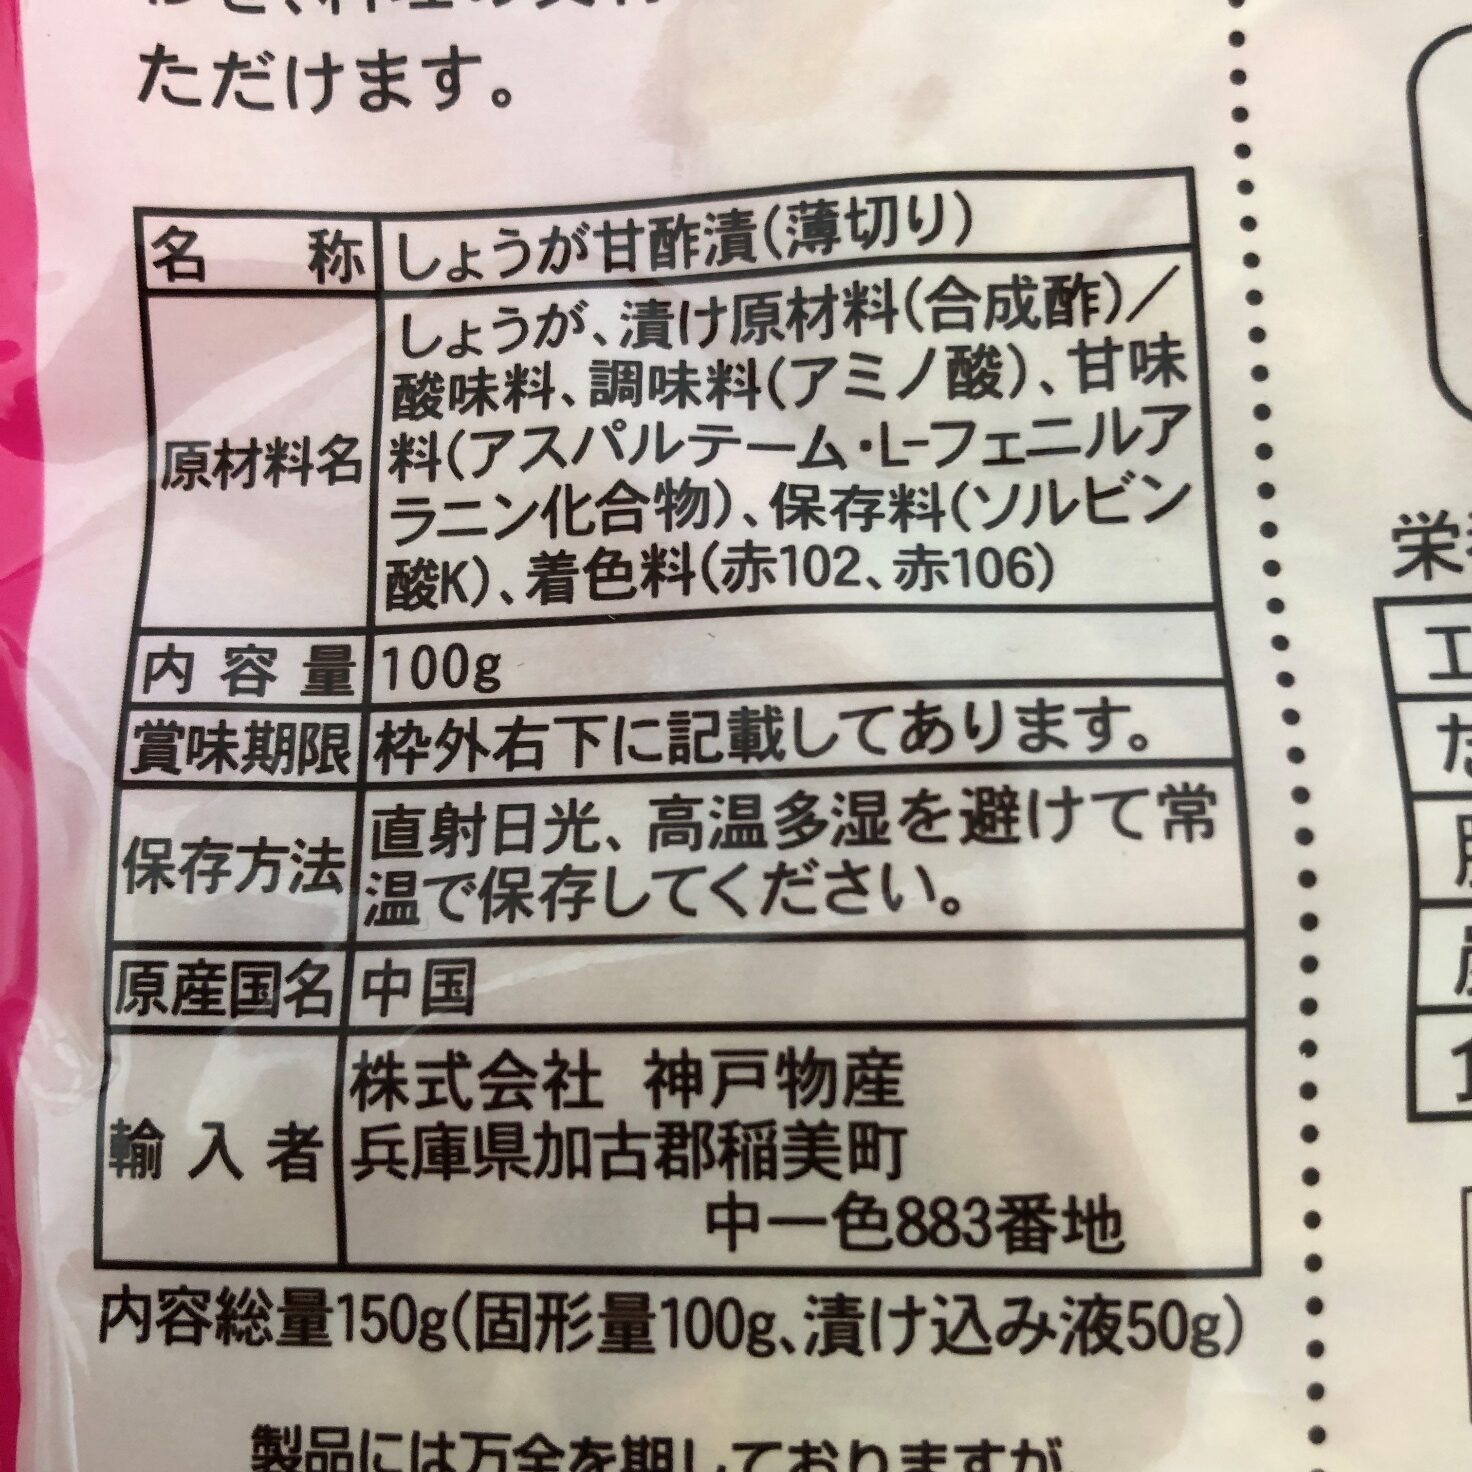 業務スーパーの甘酢平切生姜の原材料名と原産国名の表記